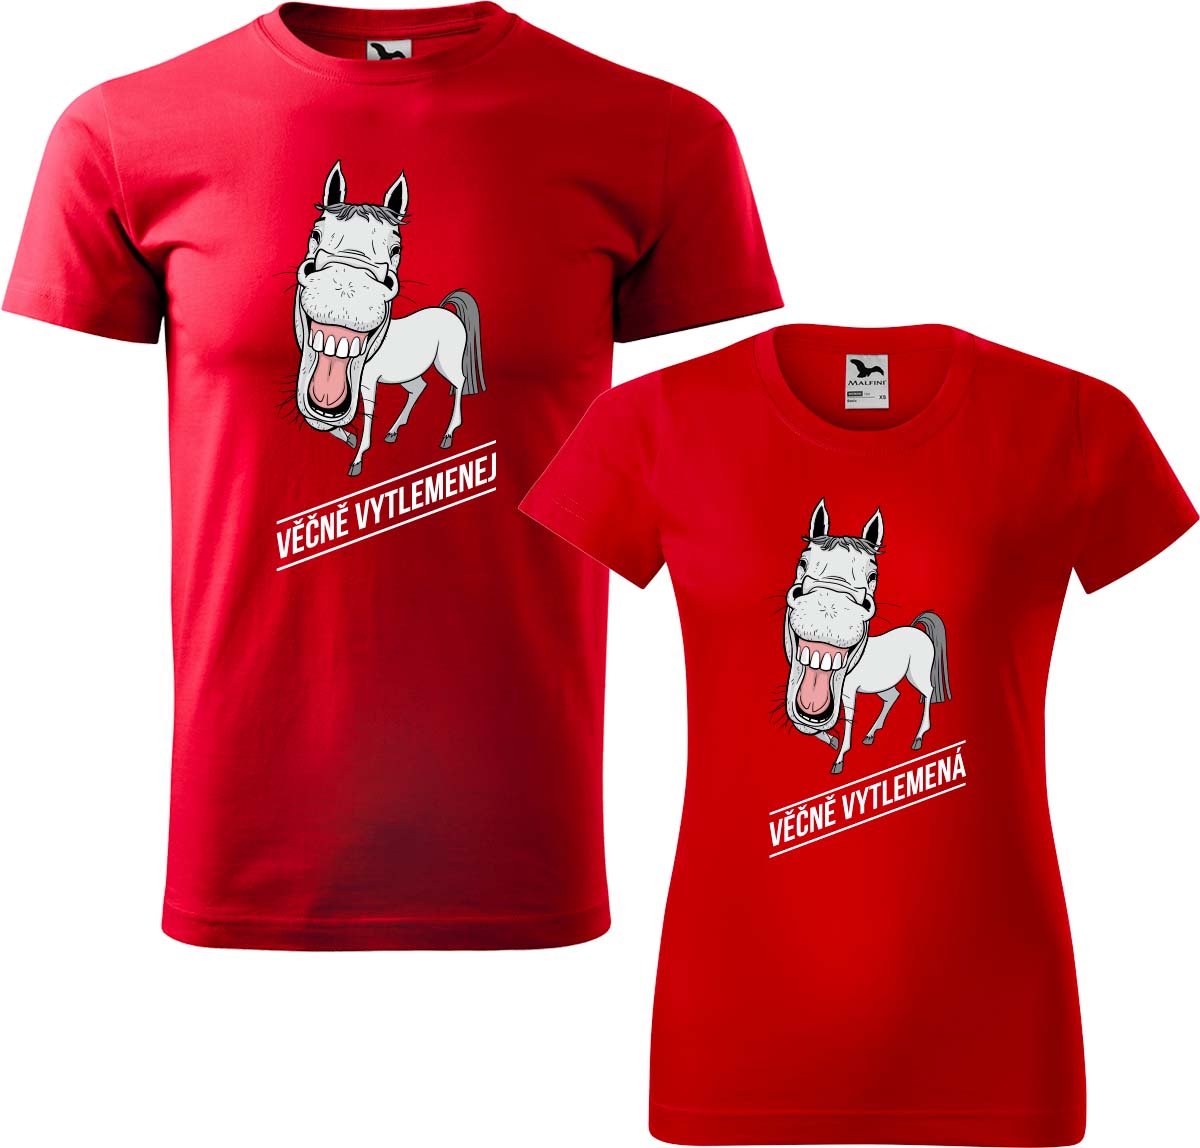 Trička pro páry - Věčně vytlemenej a věčně vytlemená Barva: Červená (07), Velikost dámské tričko: 3XL, Velikost pánské tričko: 3XL